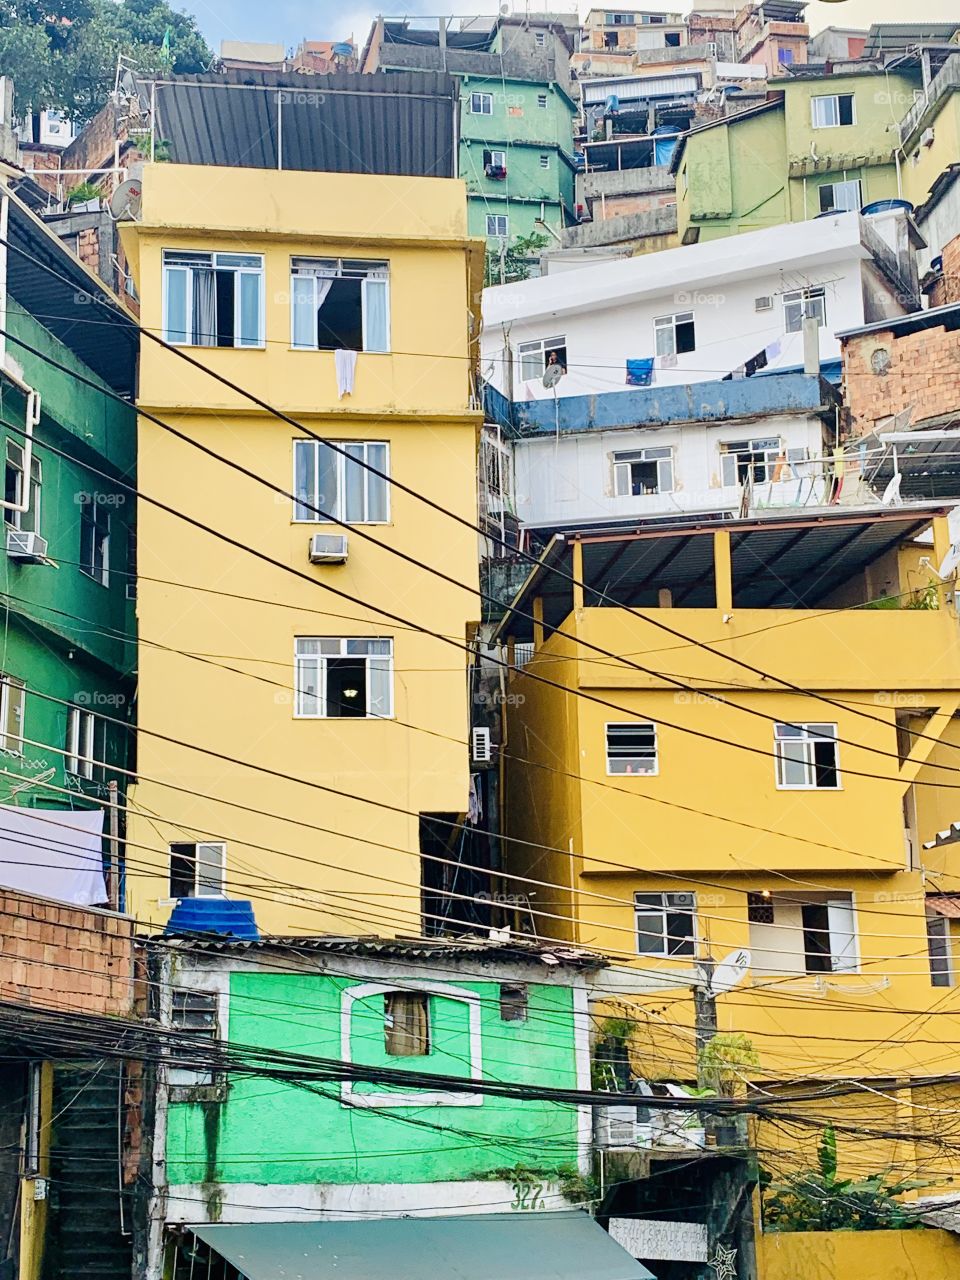 Favela Rio